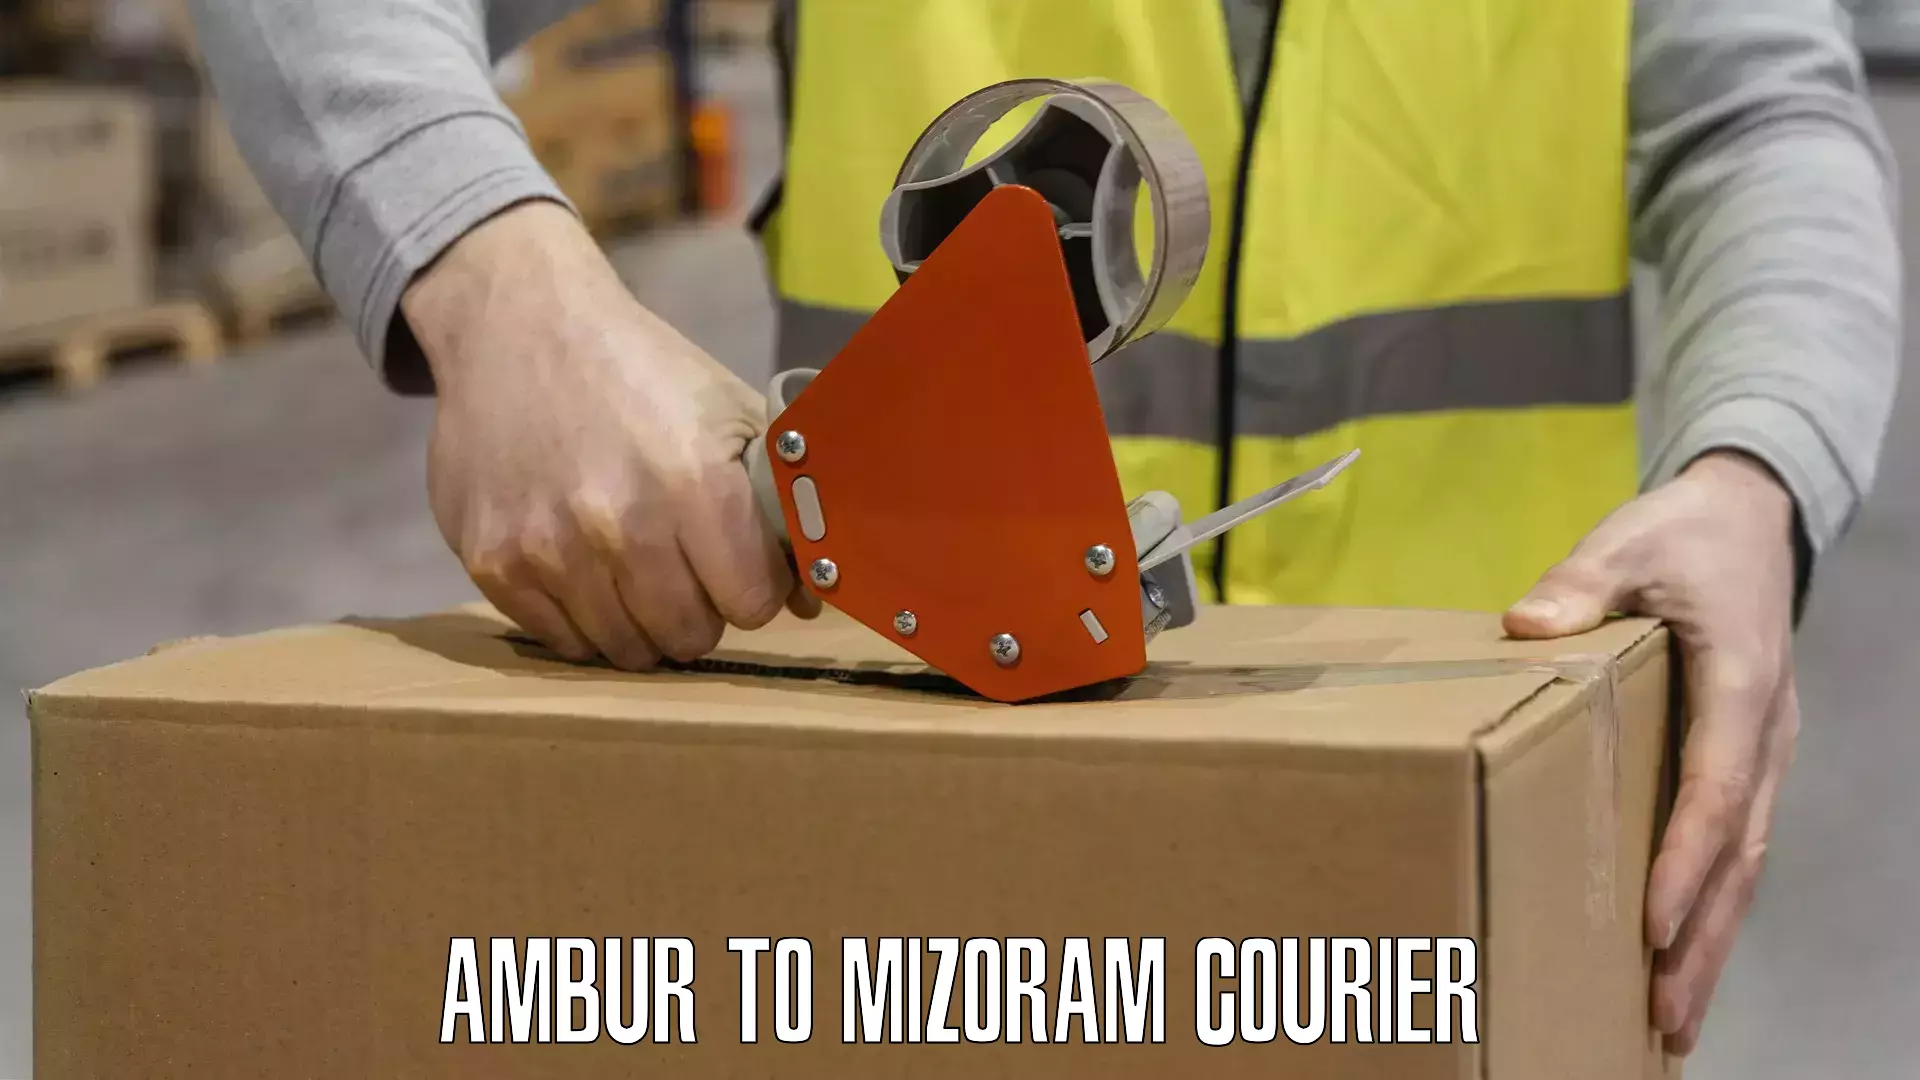 User-friendly delivery service Ambur to Aizawl